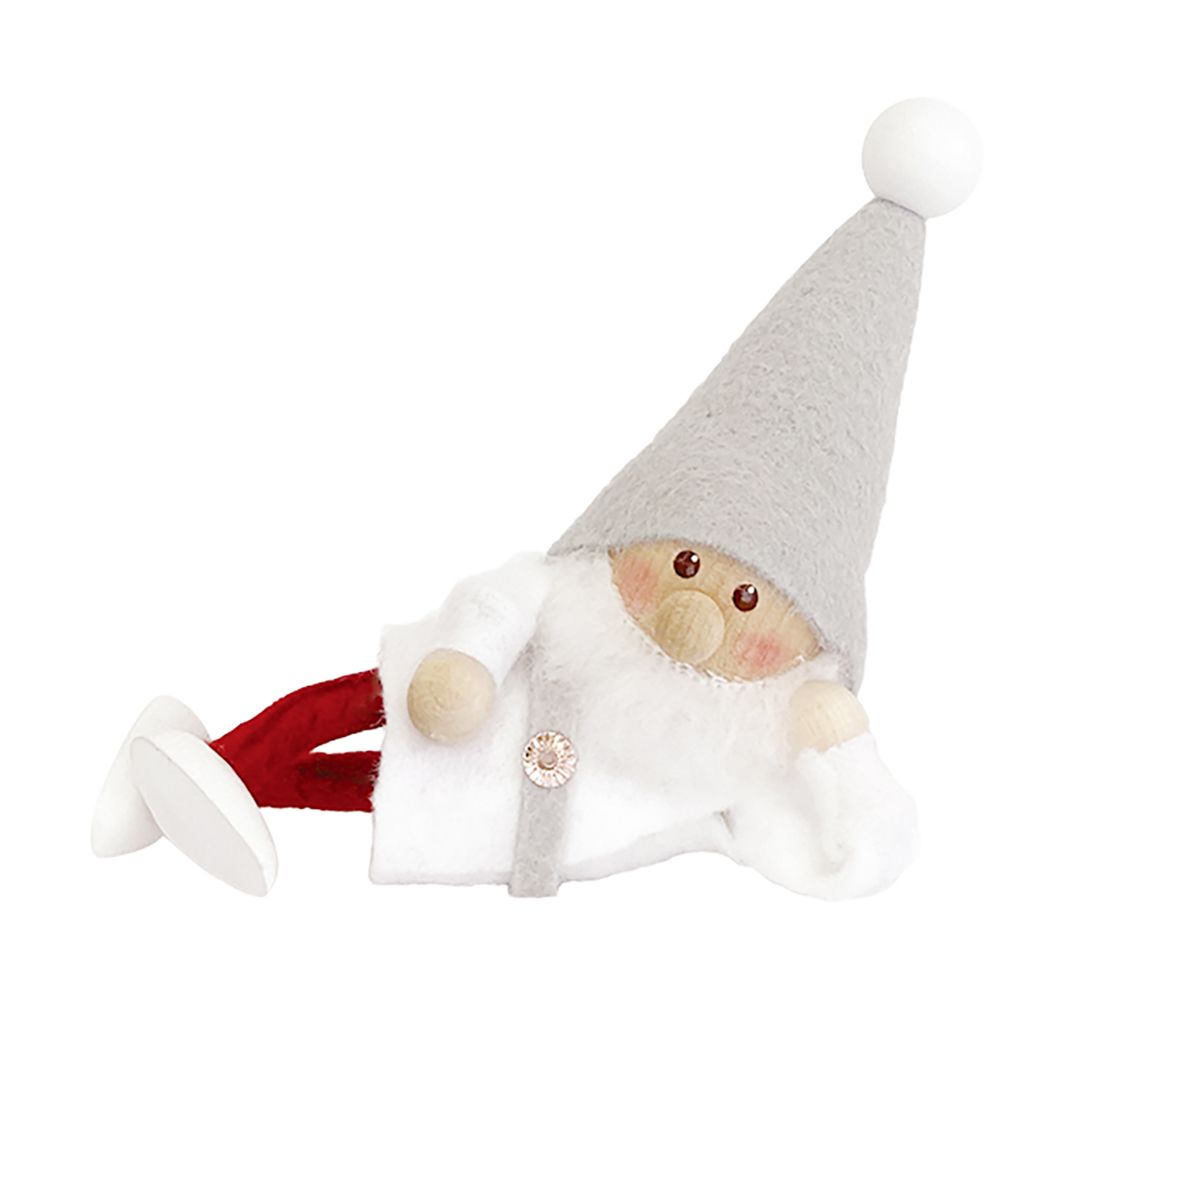 ノルディカ ニッセ クリスマス 木製人形 ひとやすみサンタ　サイレントナイト